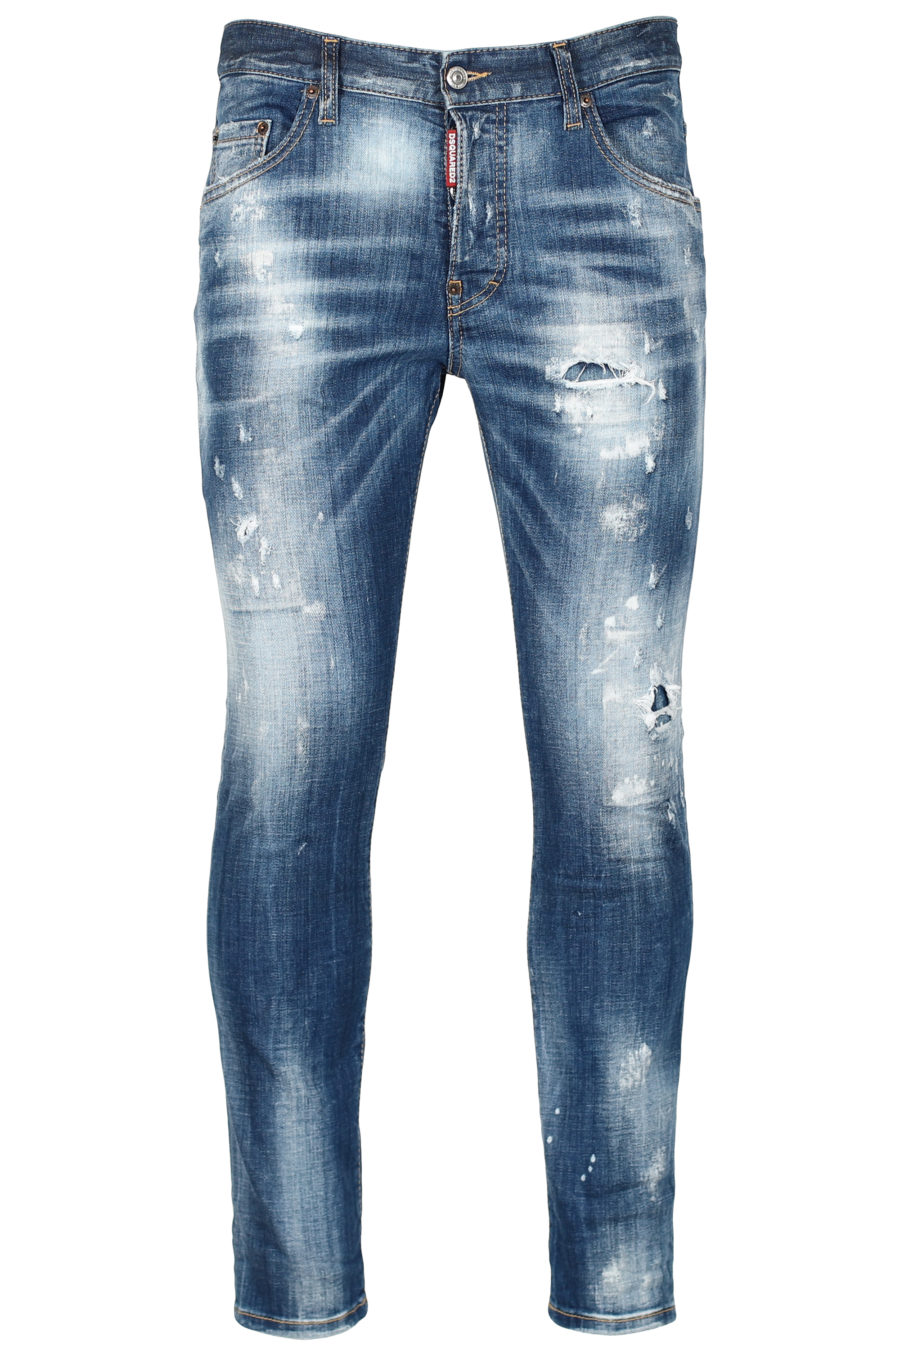 Pantalón vaquero "Skater" azul desgastado - IMG 2648